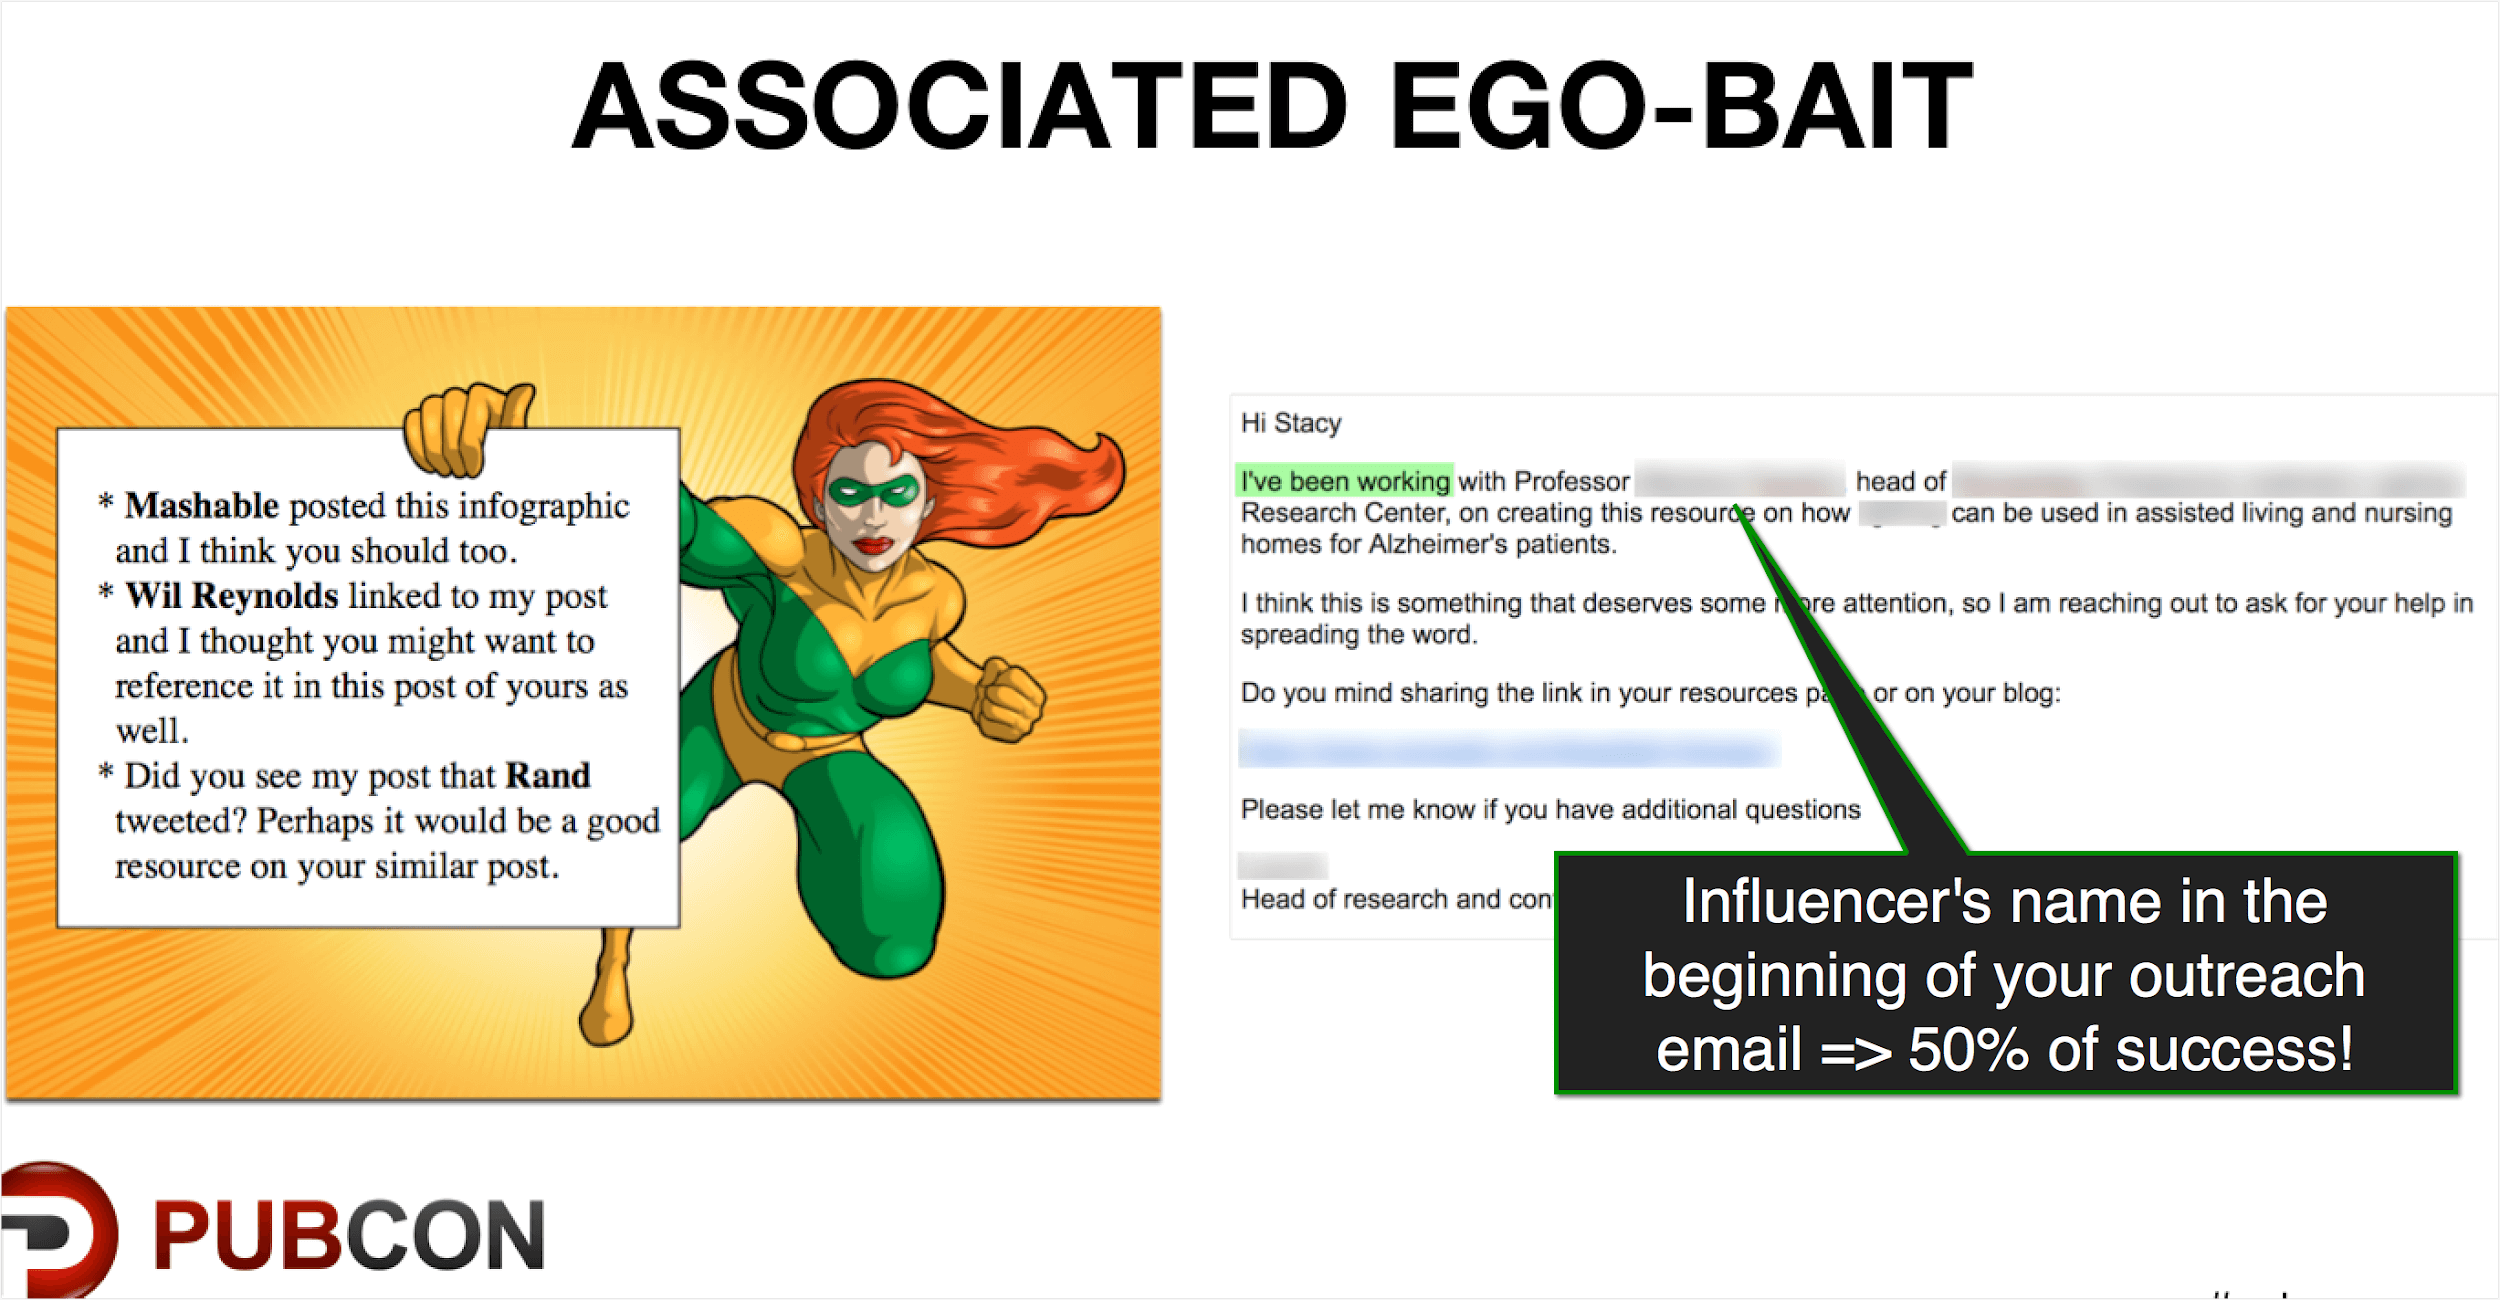 Associated ego-bait